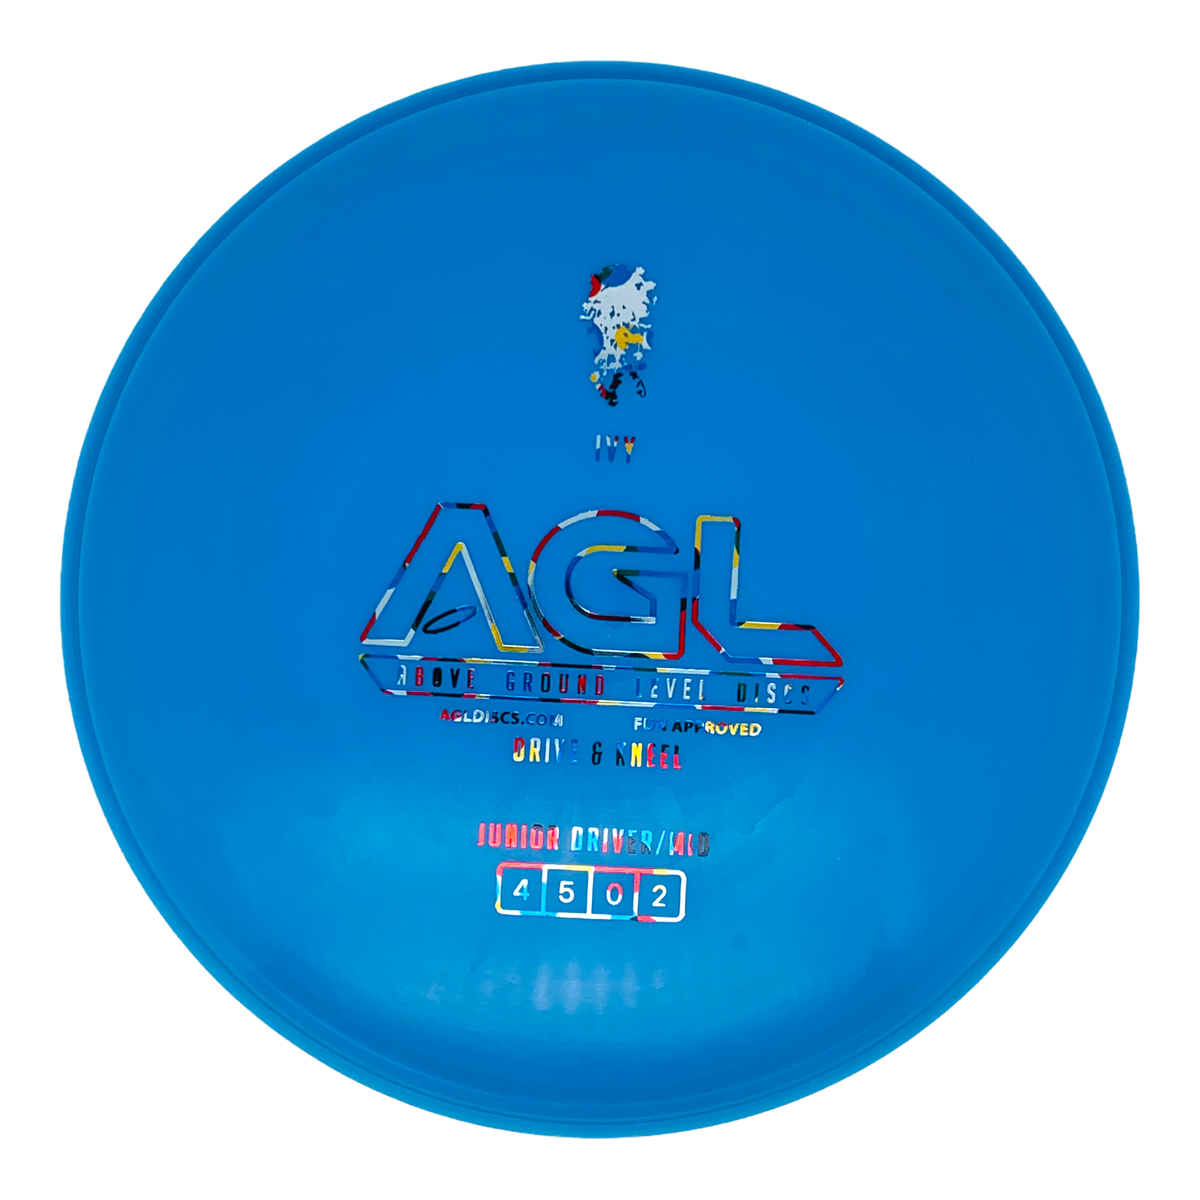 AGL Alpine Ivy (Junior Disc)